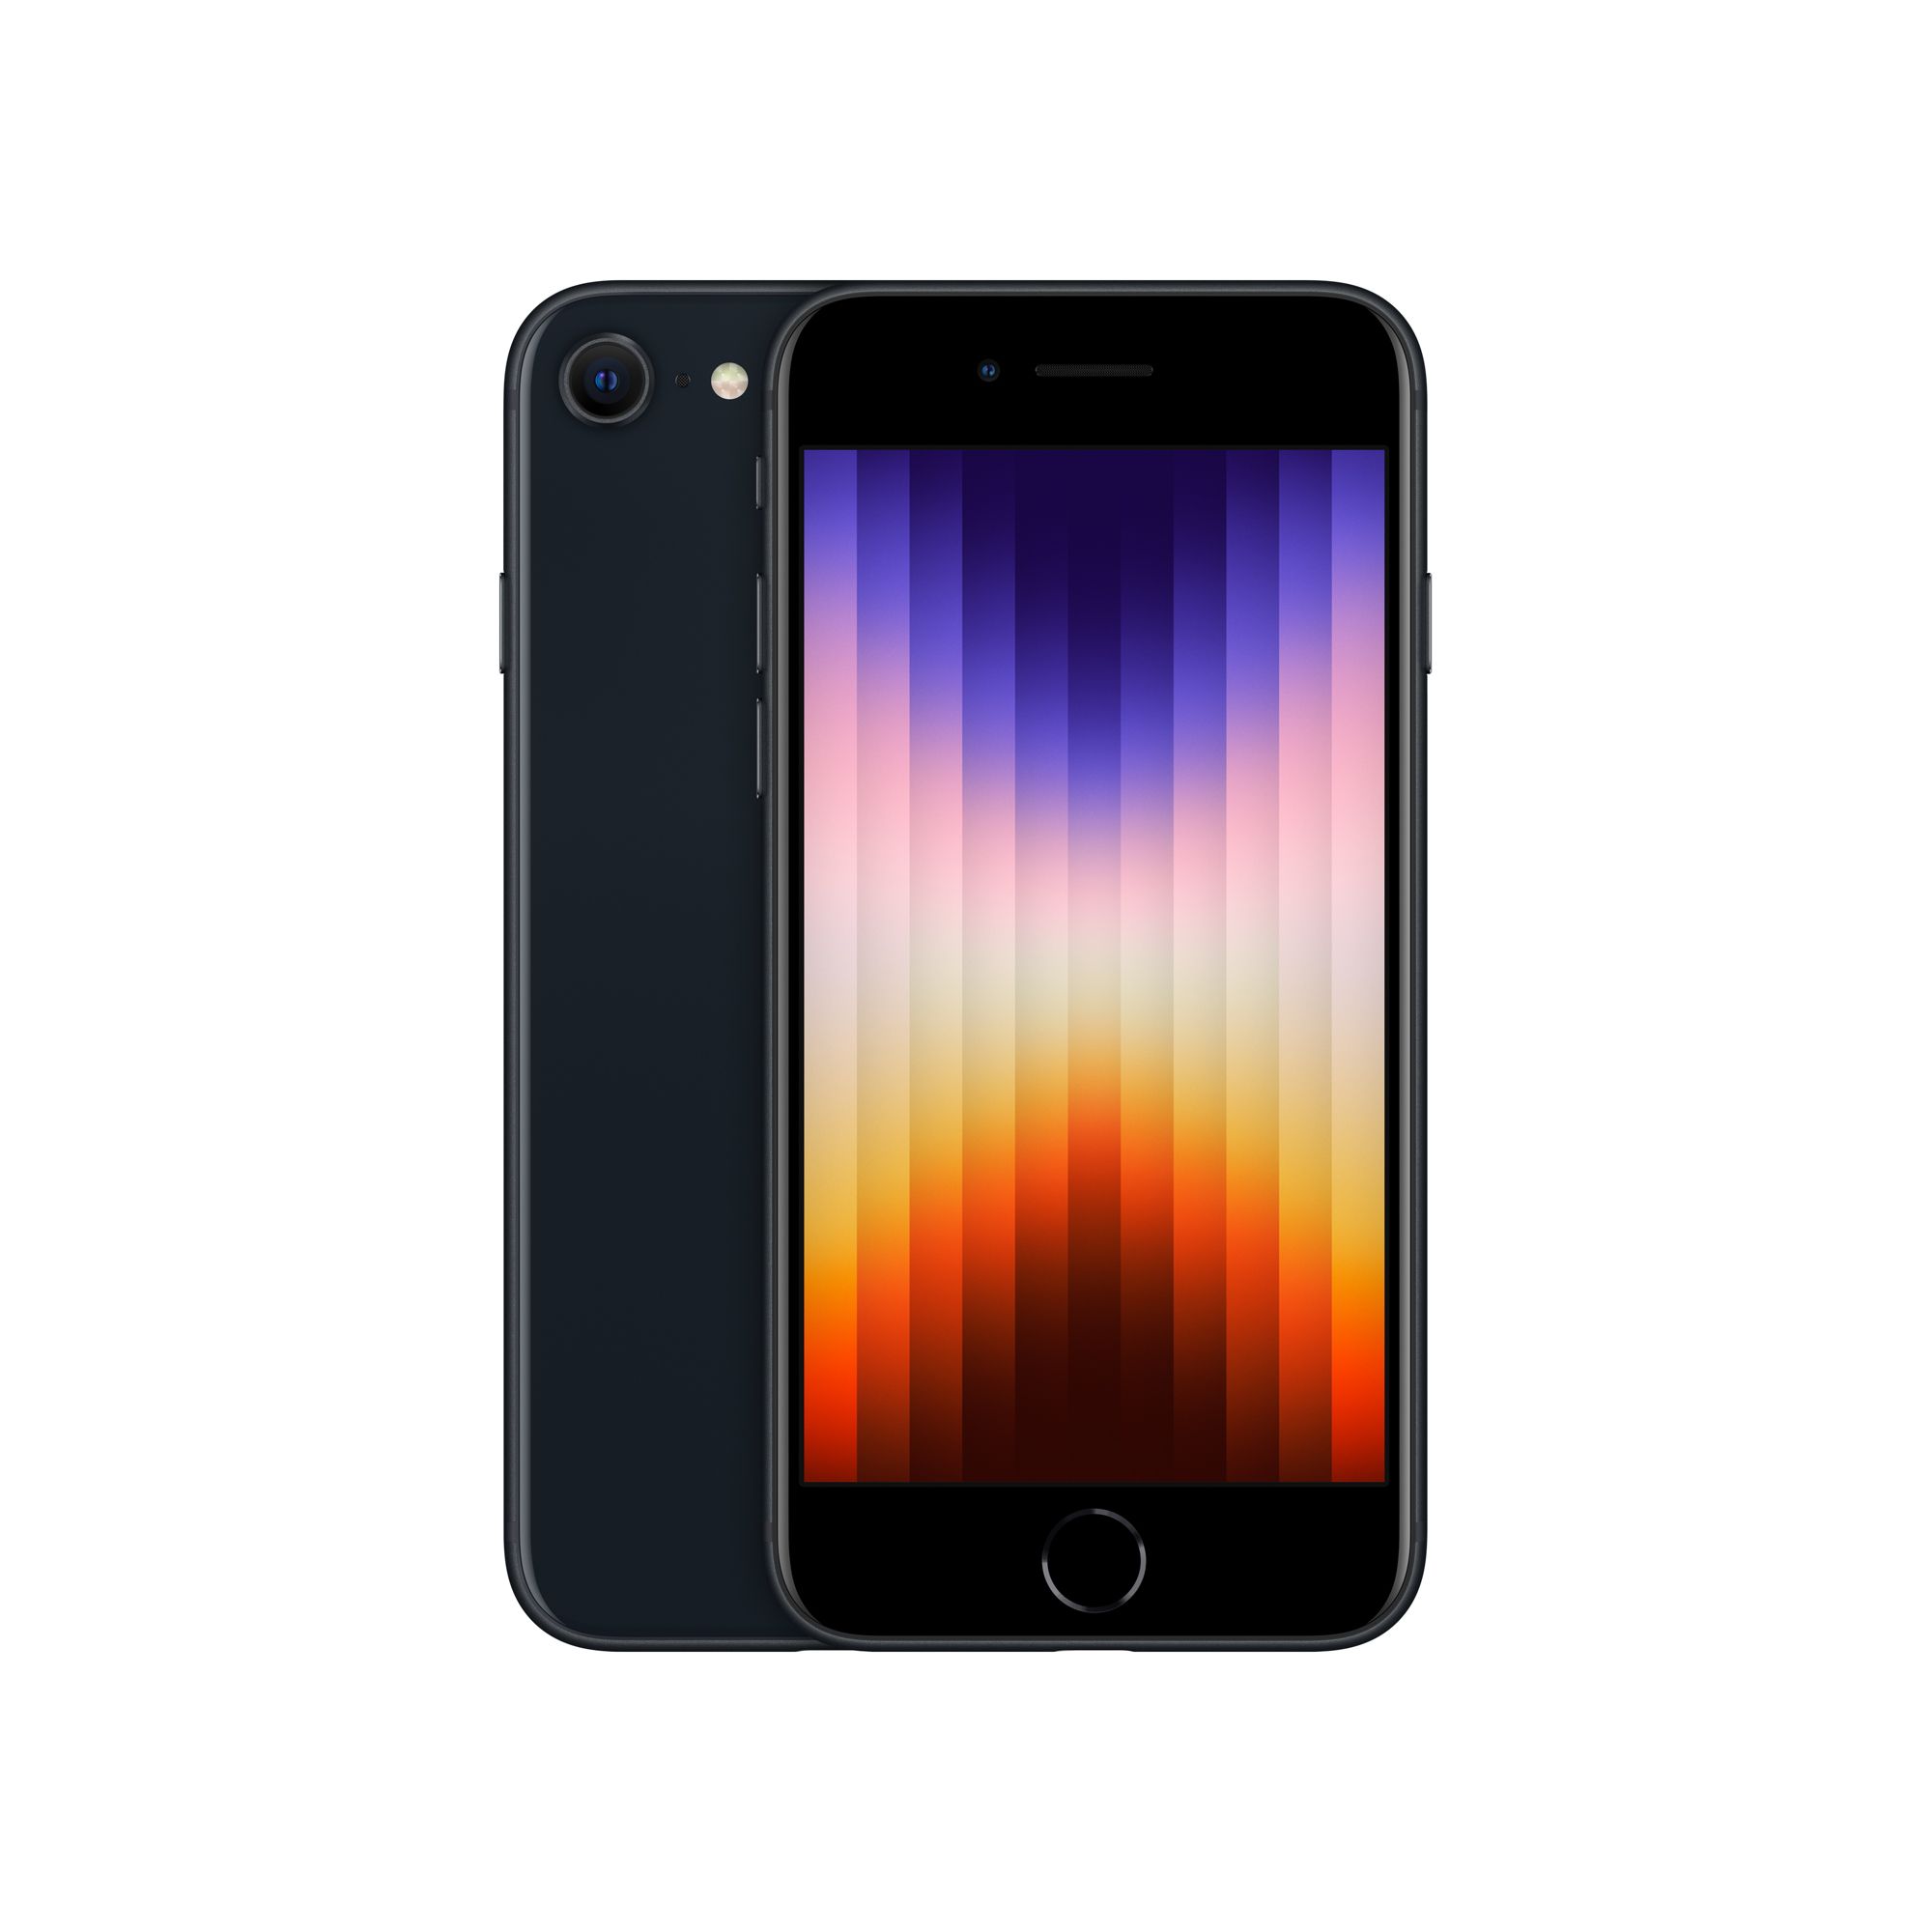 iPhone SE: Das ist Apples neues Günstig-Smartphone